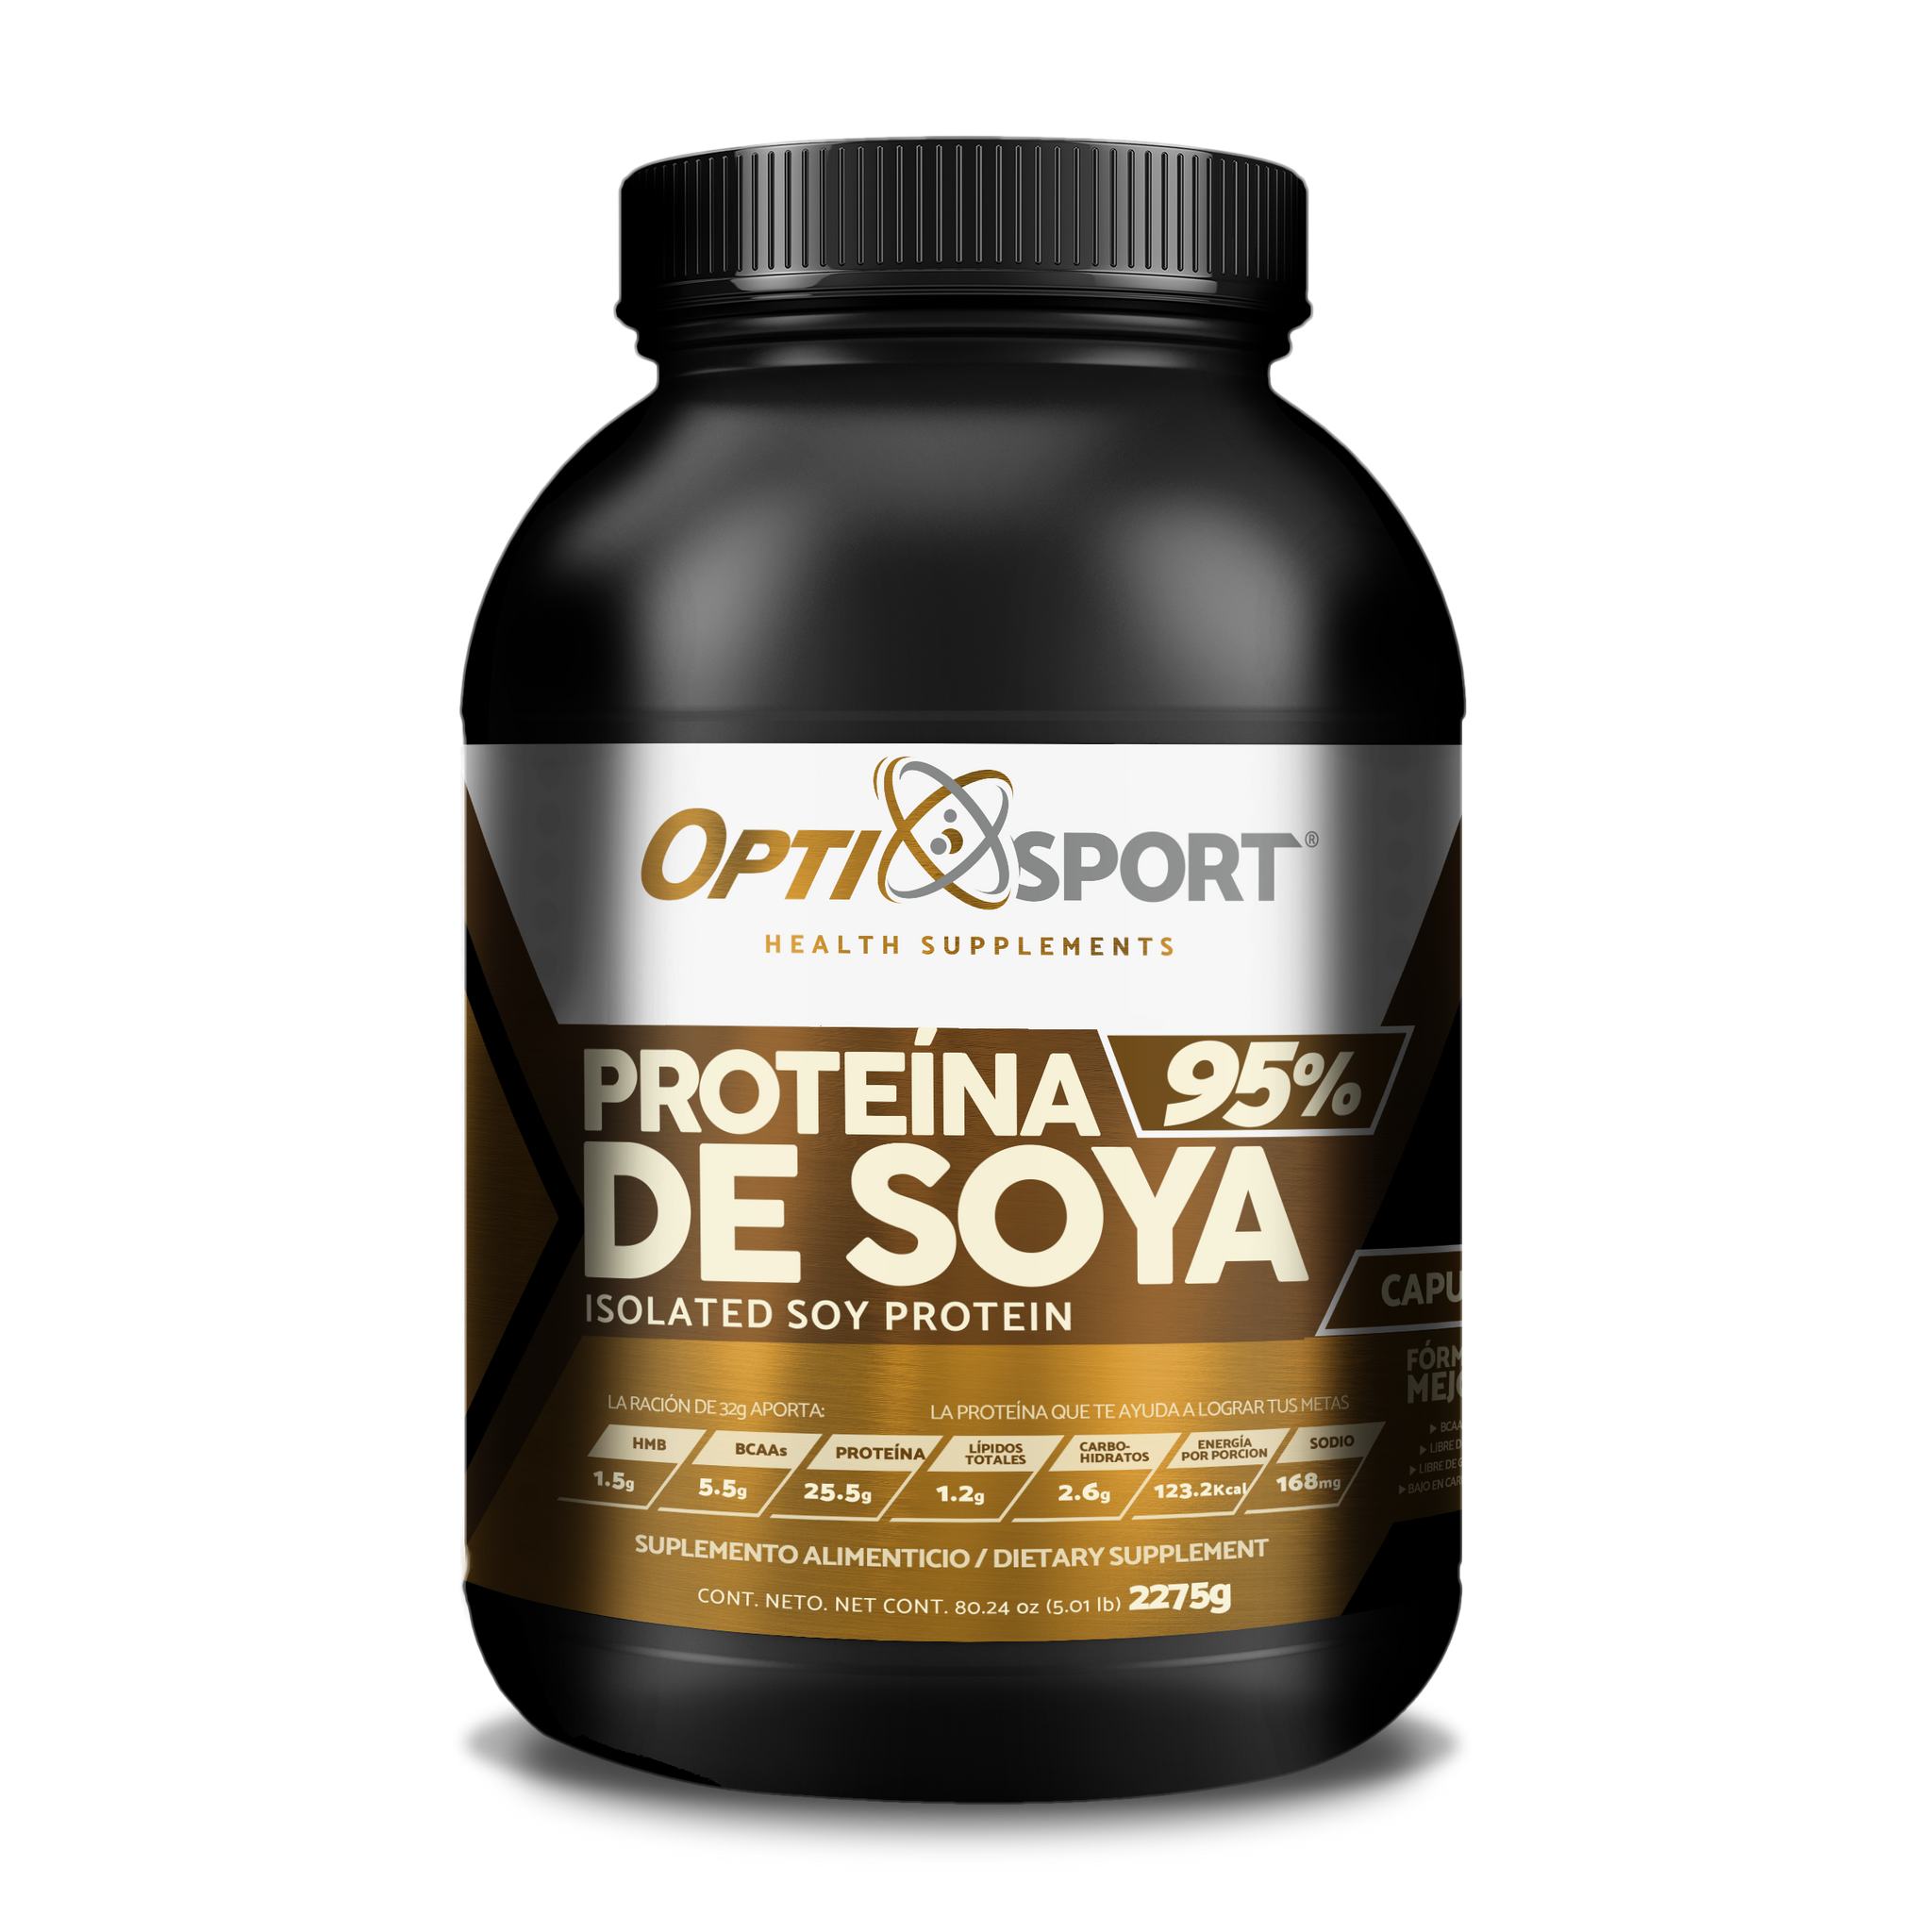 SOYA95 OptiSport Proteína de Soya +HMB + BCAAs, que NO Inflama, 25.5 g de proteína por servicio, 39 servicios | Sabor Capuchino | Bote con 1250 gr | Suplemento en Polvo | Proteína de Soya